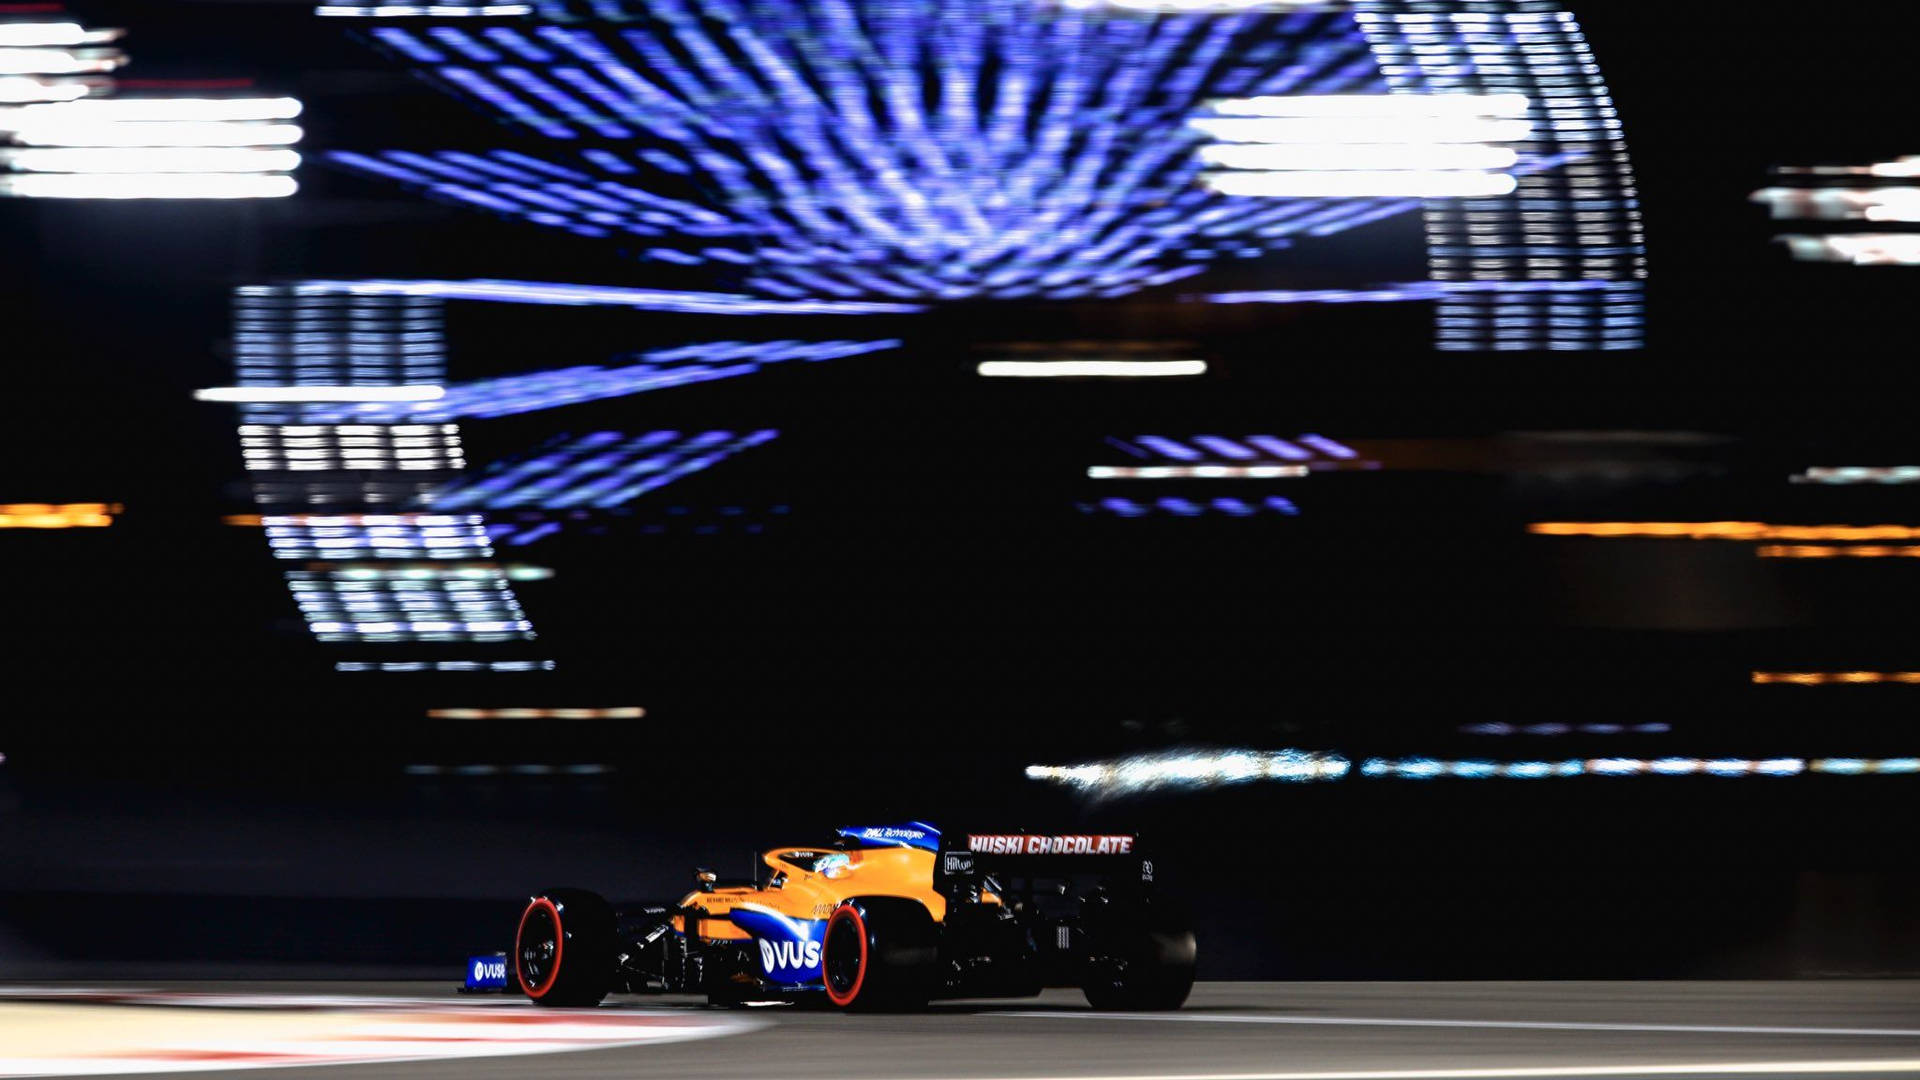 Daniel Ricciardo F1 Car Against Billboard Screen Background